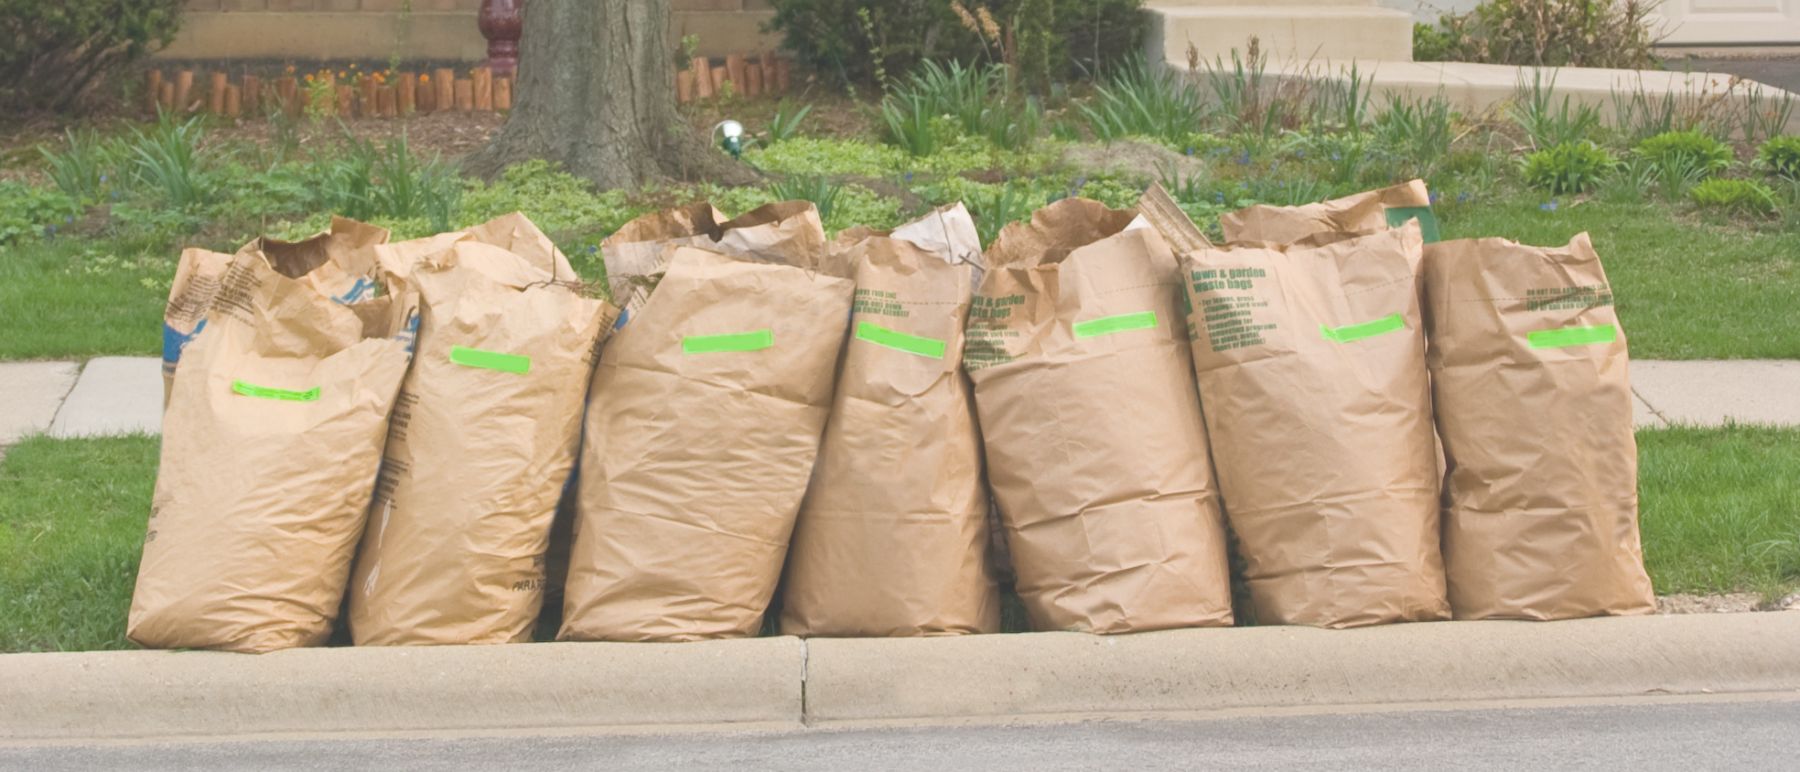 yard waste bags on curb